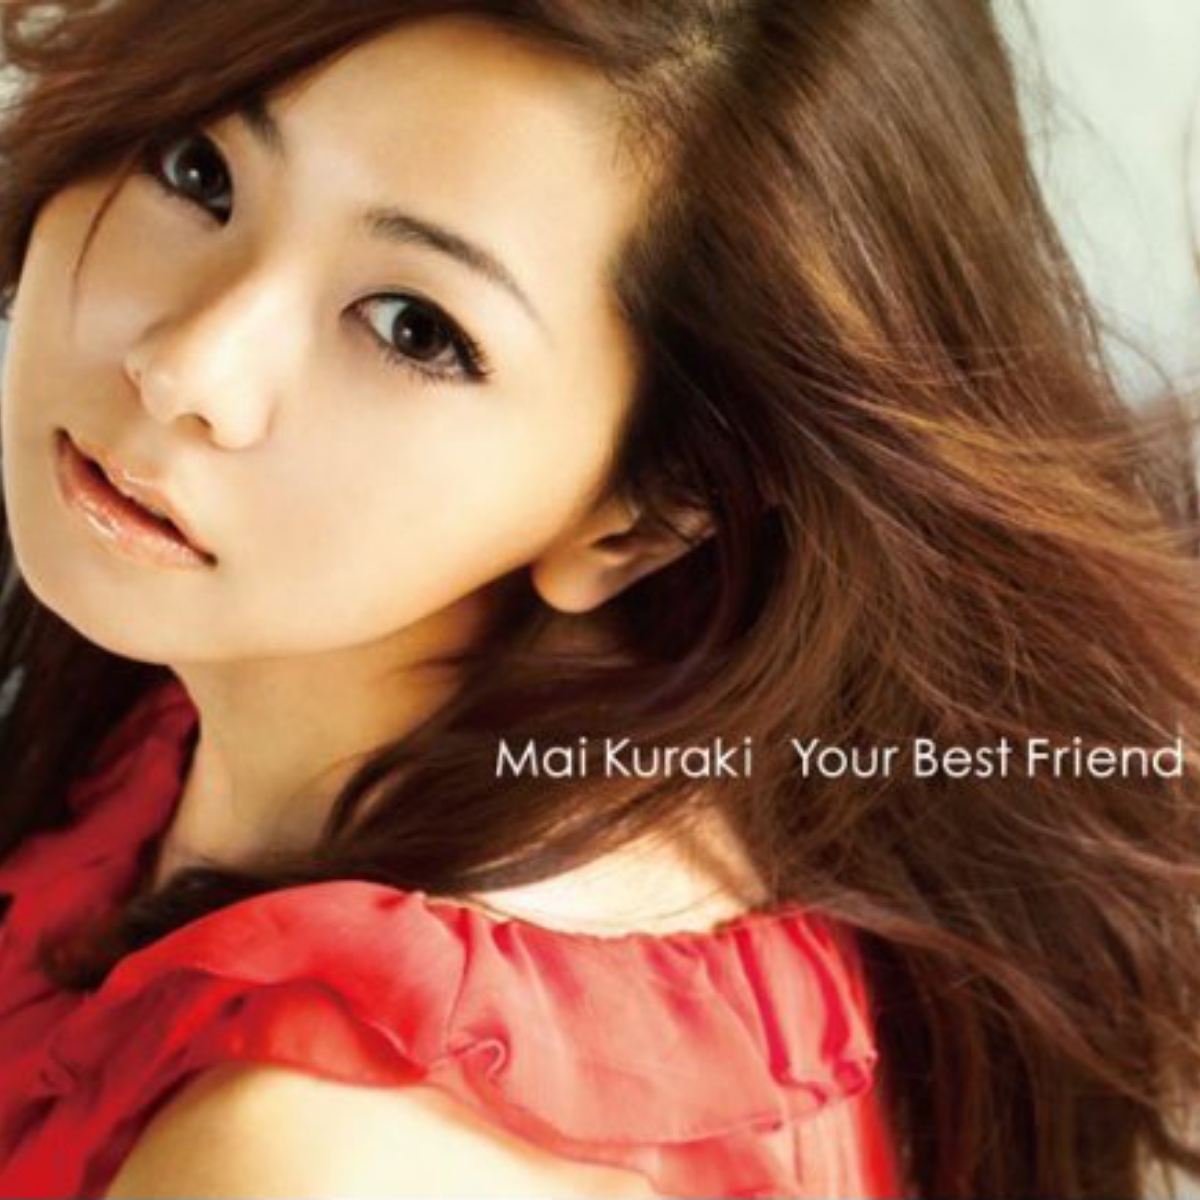 Mai Kuraki - Your Best Friend